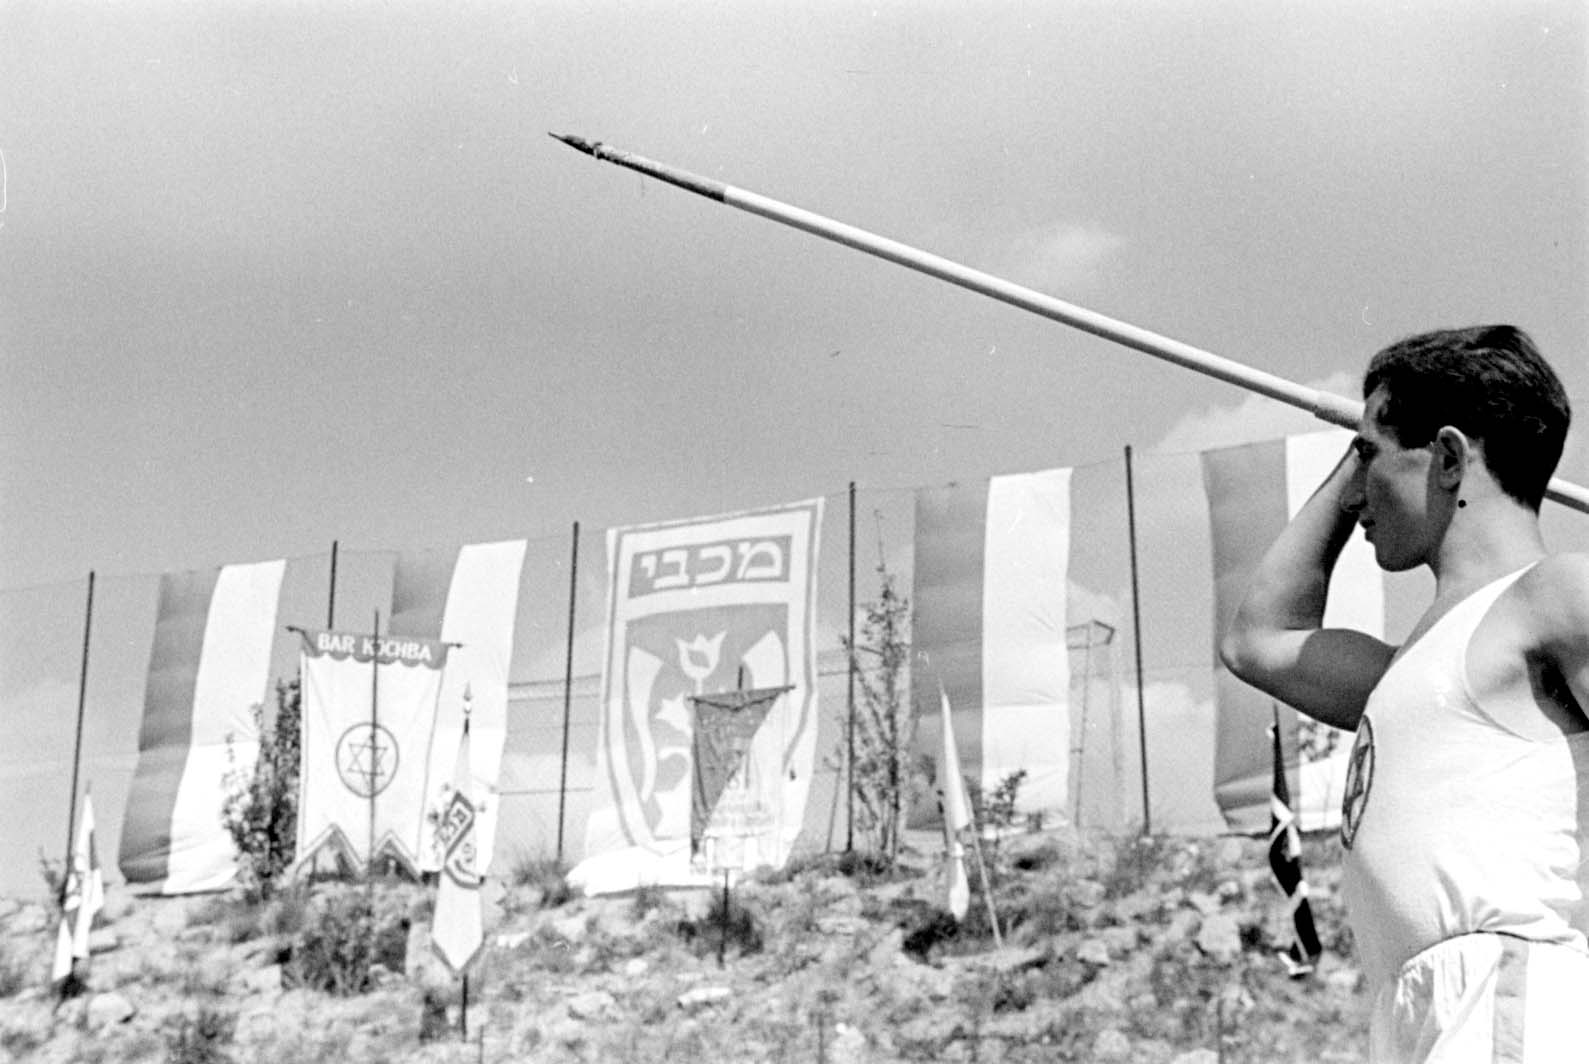 Berlín, Alemania, preguerra. Evento deportivo: jabalina. En el trasfondo se ven varias banderas, entre ellas las de las asociaciones deportivas "Macabi" y "Bar Kojba"